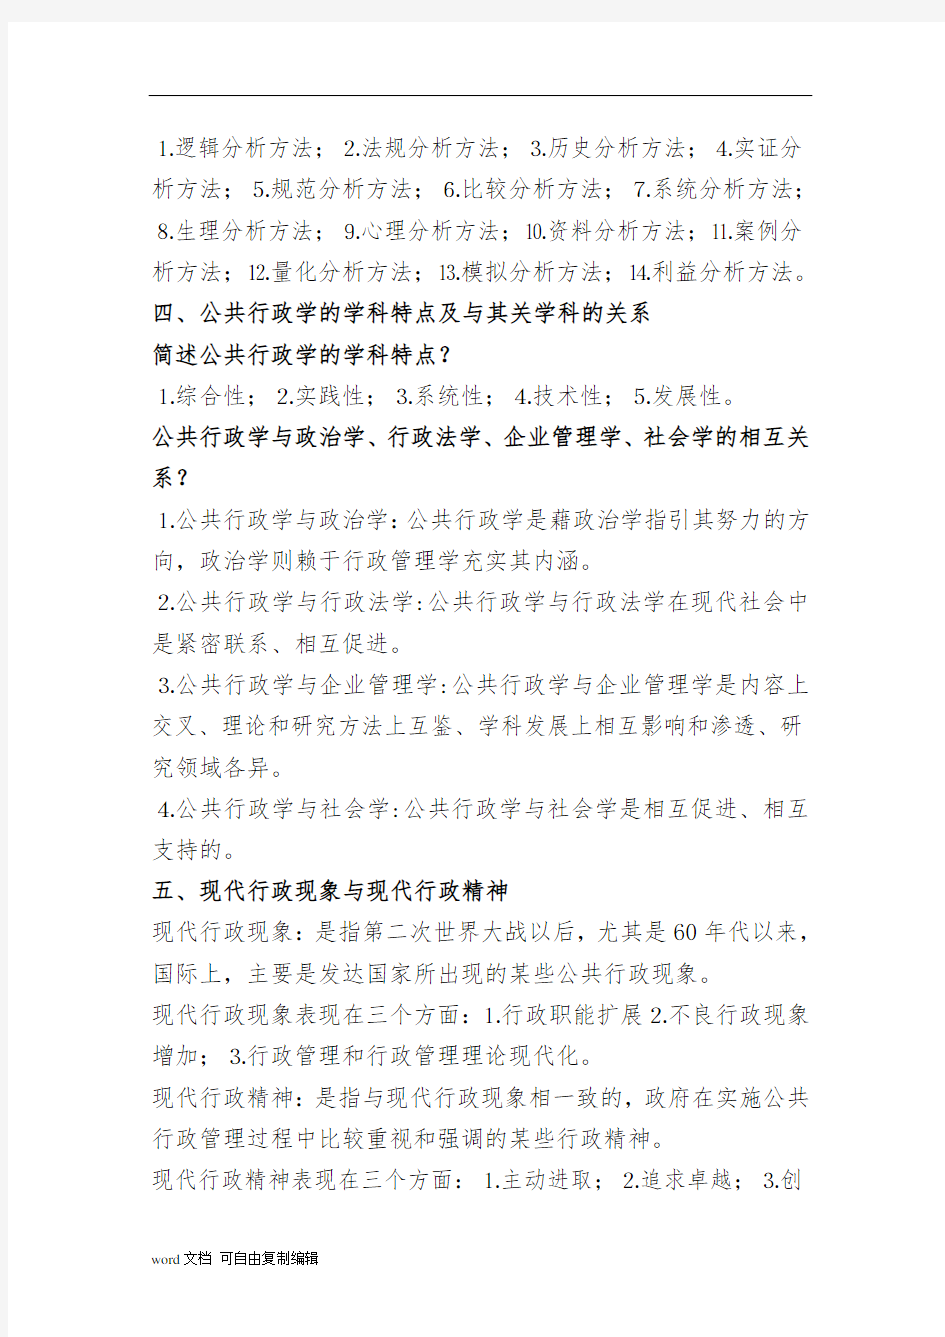 张国庆《公共行政学》(第三版)笔记